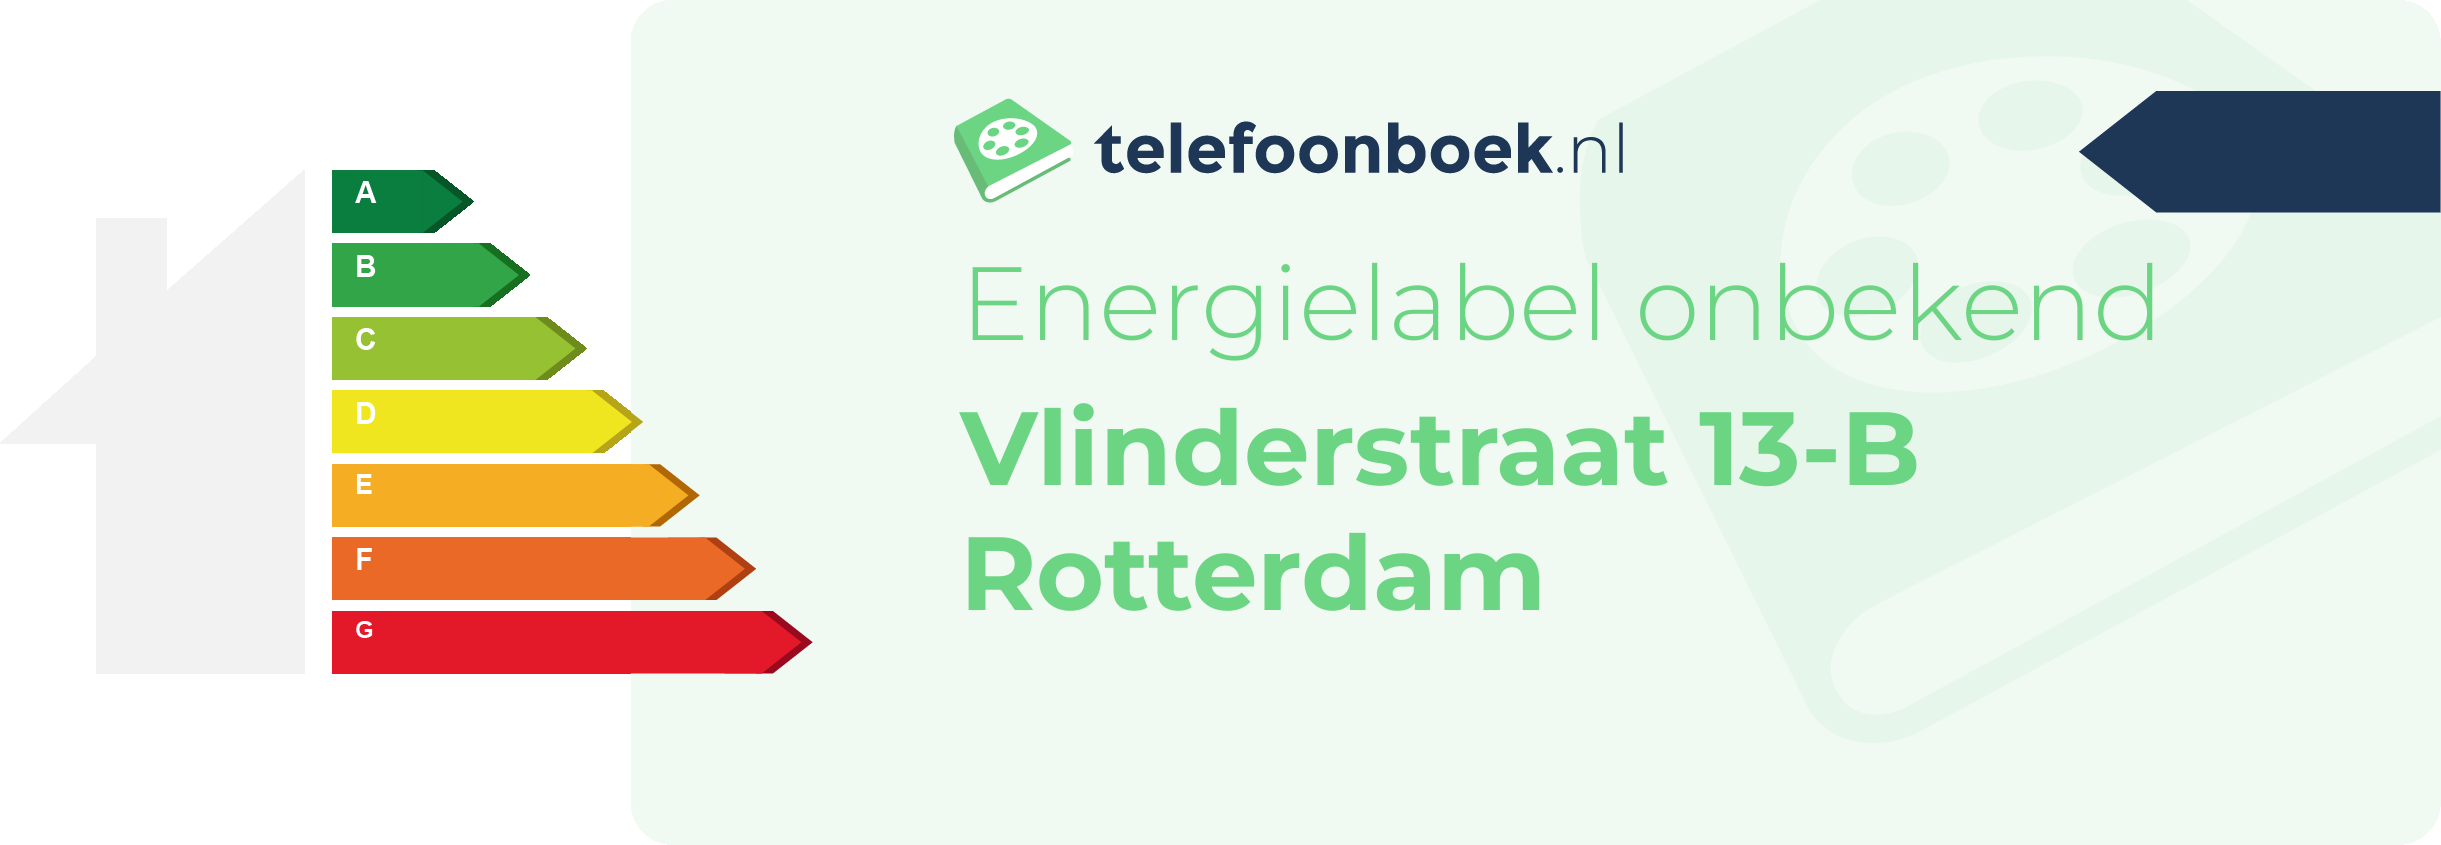 Energielabel Vlinderstraat 13-B Rotterdam